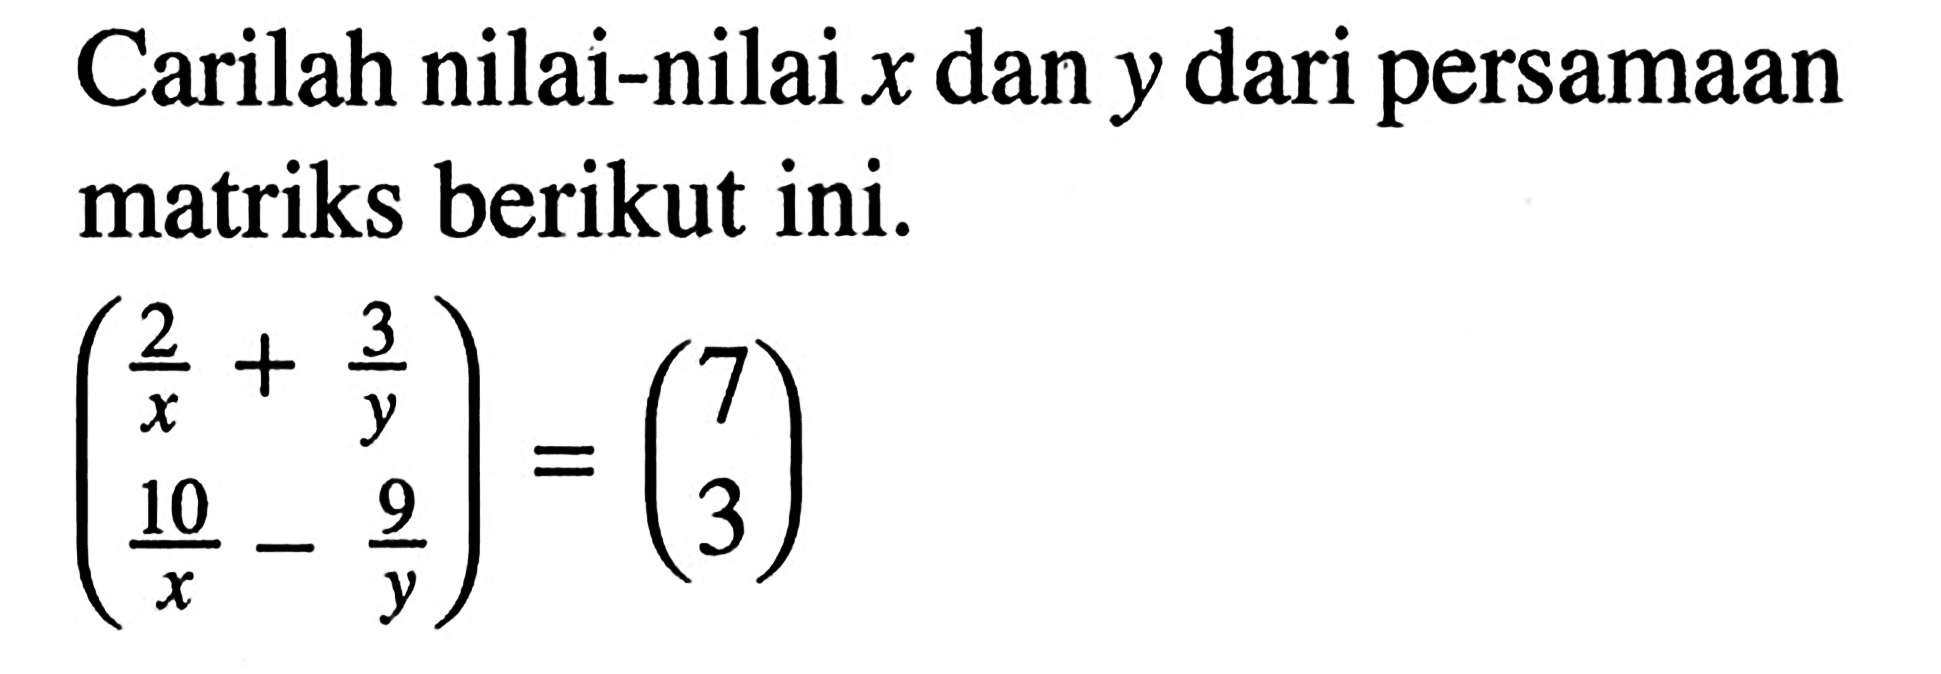 Carilah nilai-nilai x dan y dari persamaan matriks berikut ini.(2/x + 3/y 10/x - 9/y) = (7 3)